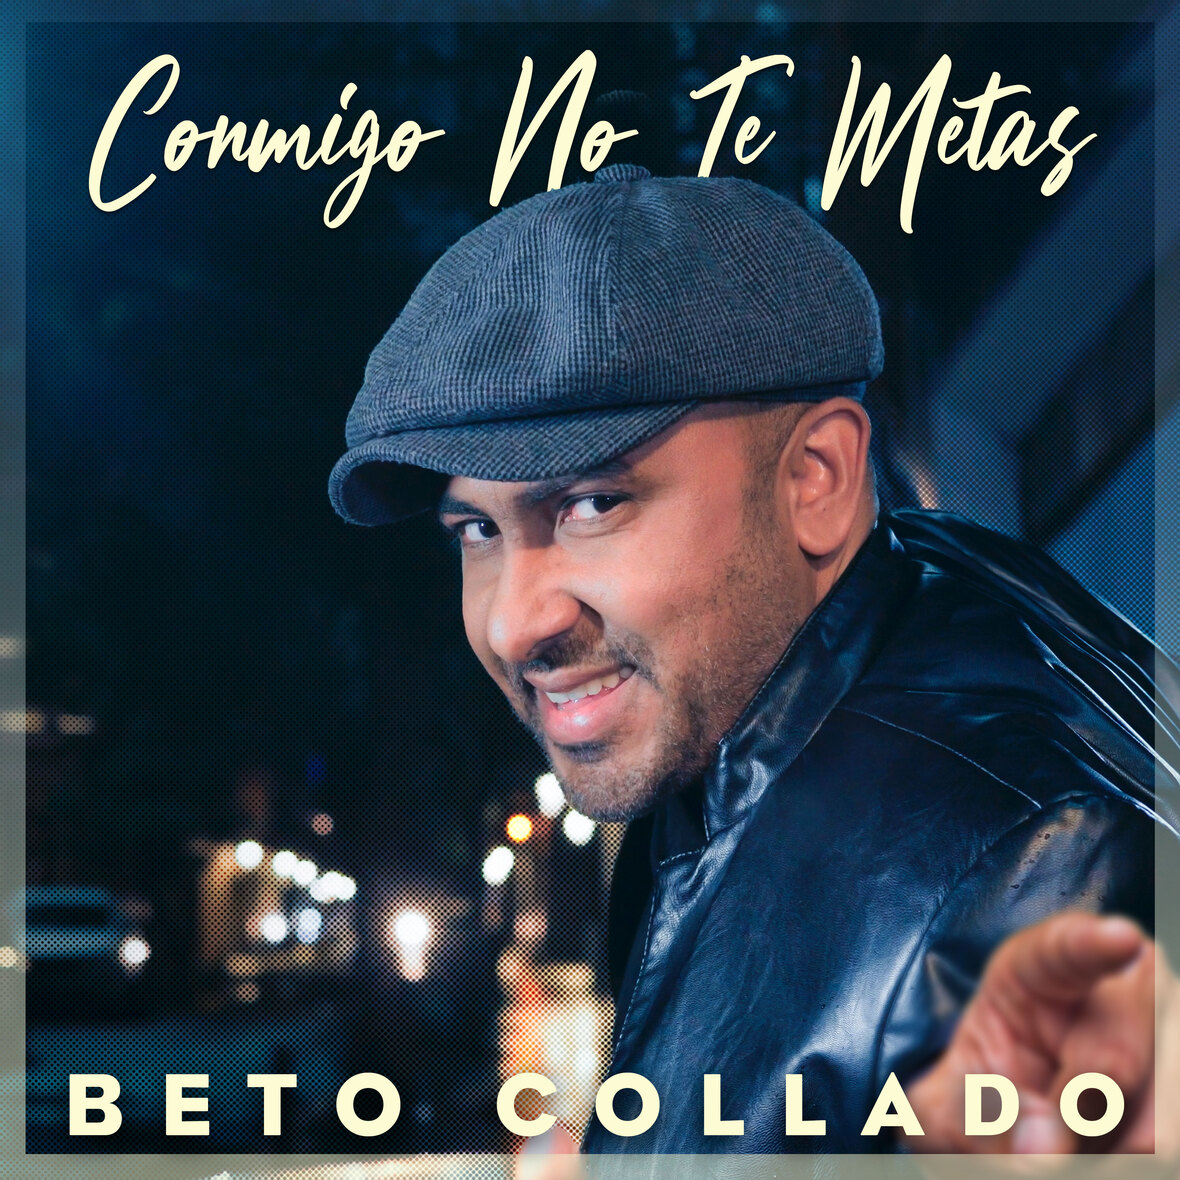 BETO COLLADO presenta nuevo sencillo “Conmigo No Te Metas”